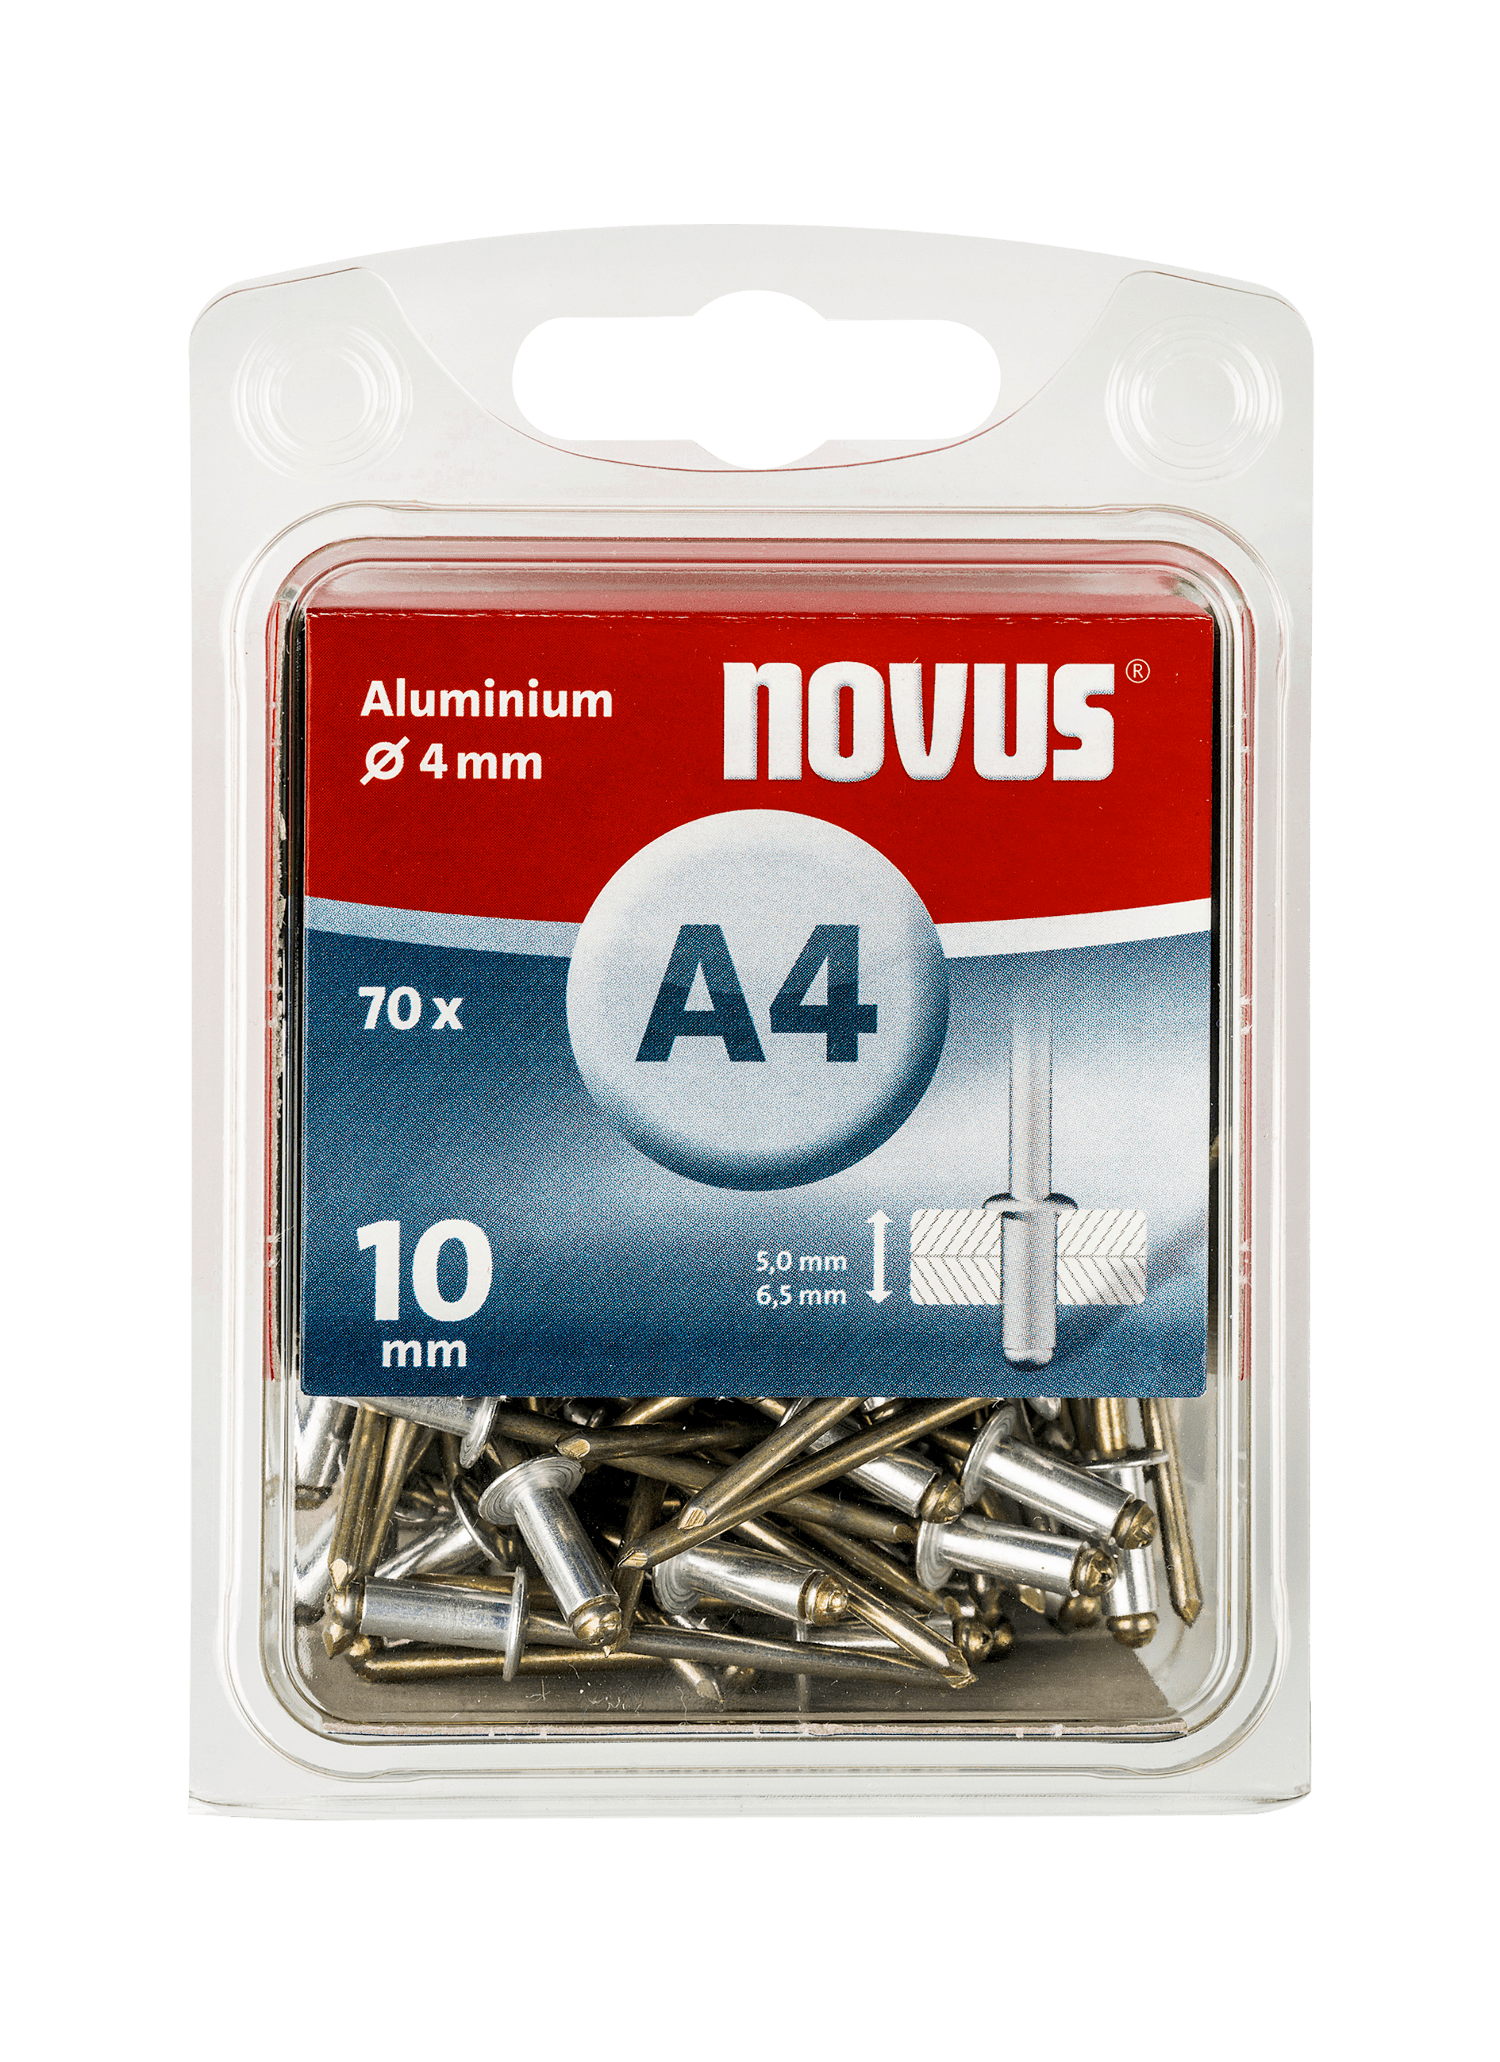 NOVUS aluminium blind rivet